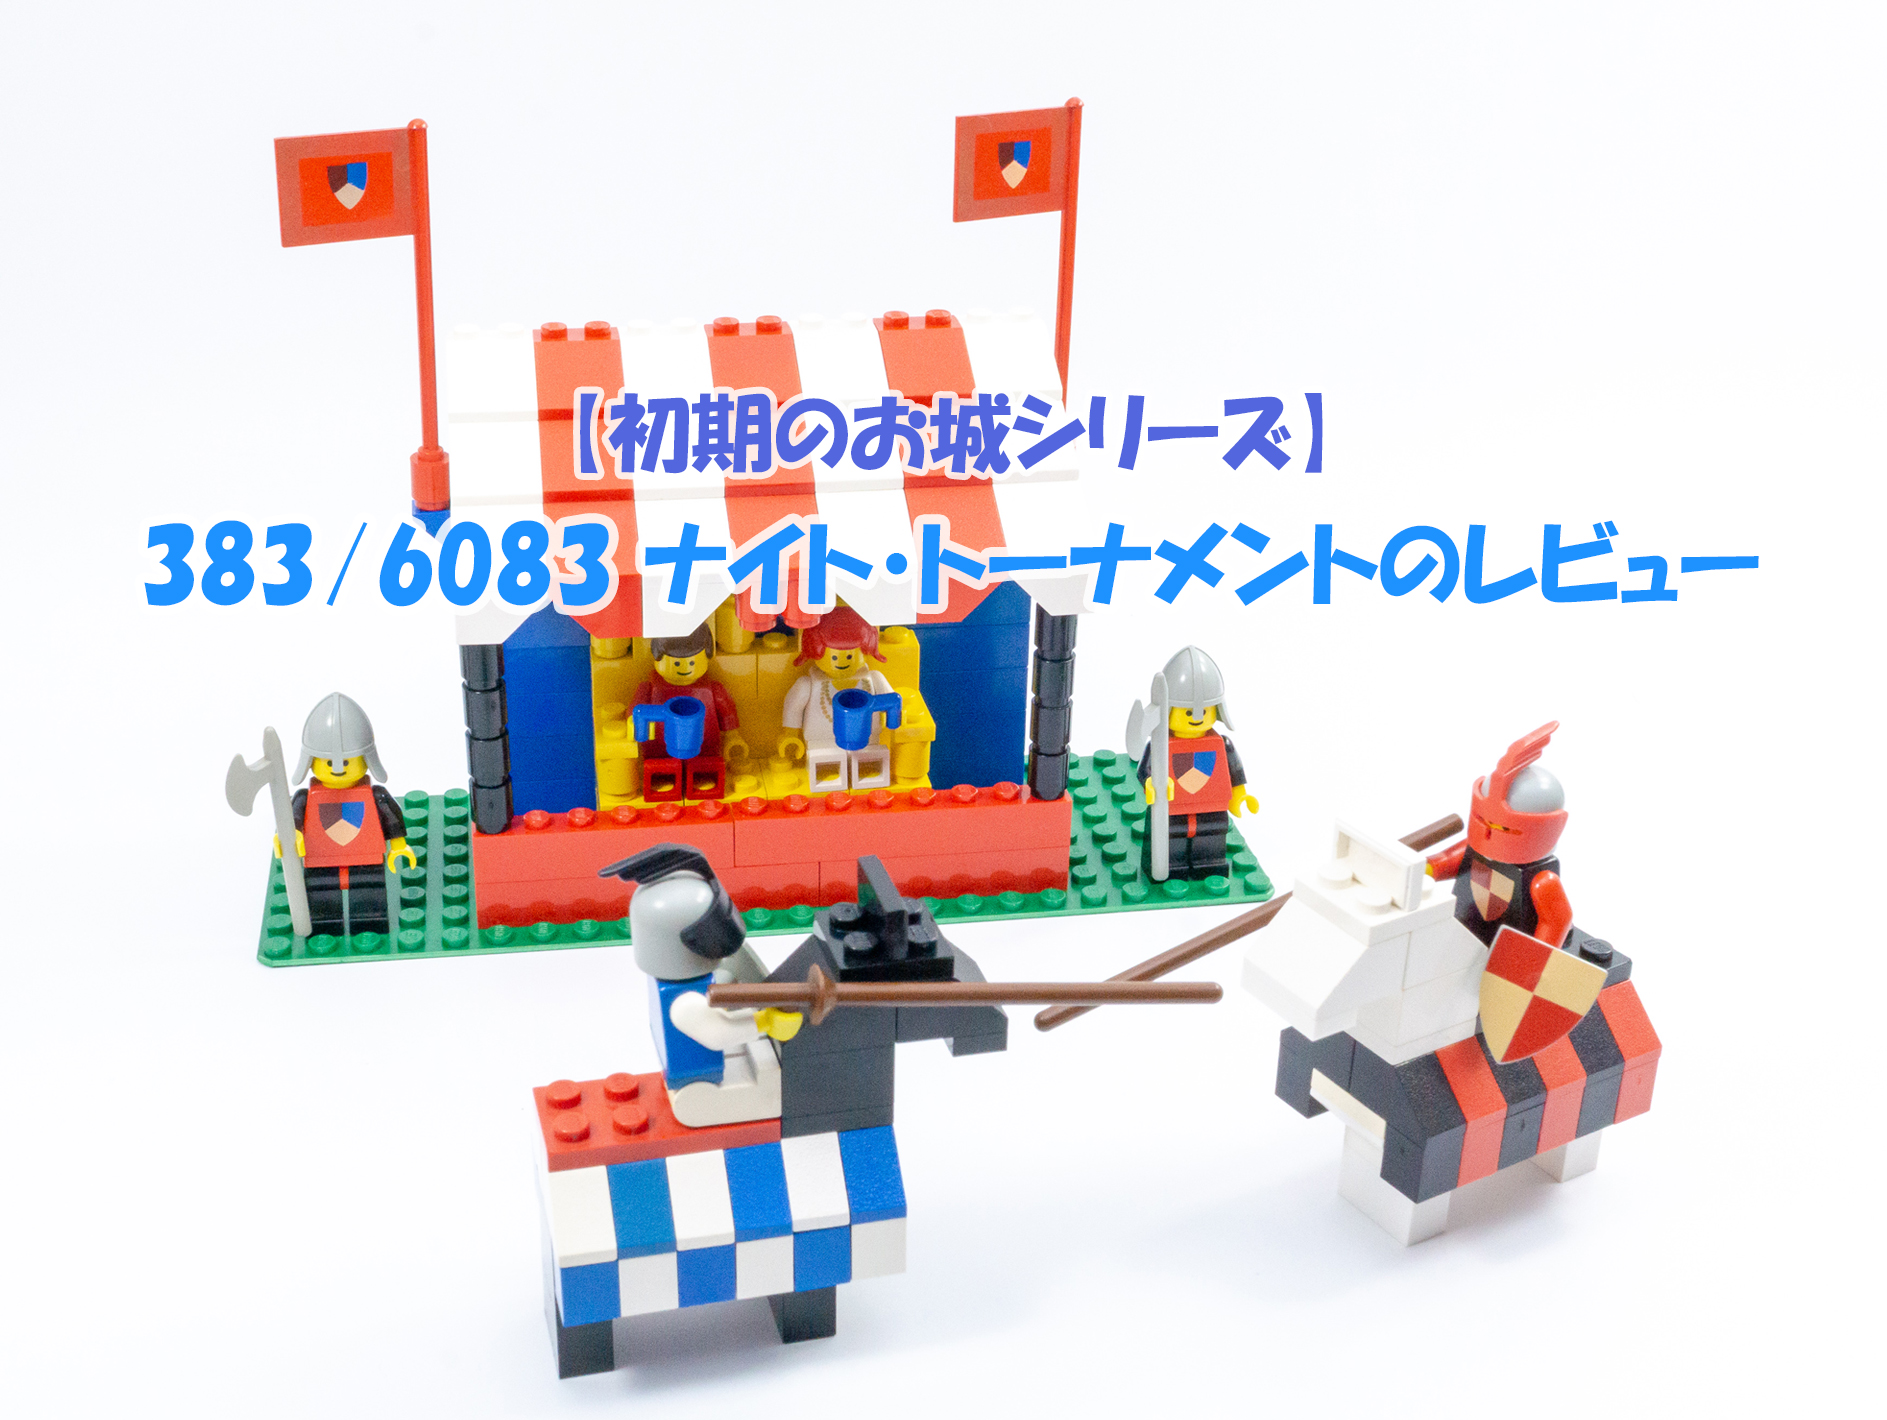 【初期のお城シリーズ】383/6083 ナイト・トーナメントのレビュー | Legoanywhere -かわいいレゴと綺麗な風景写真-